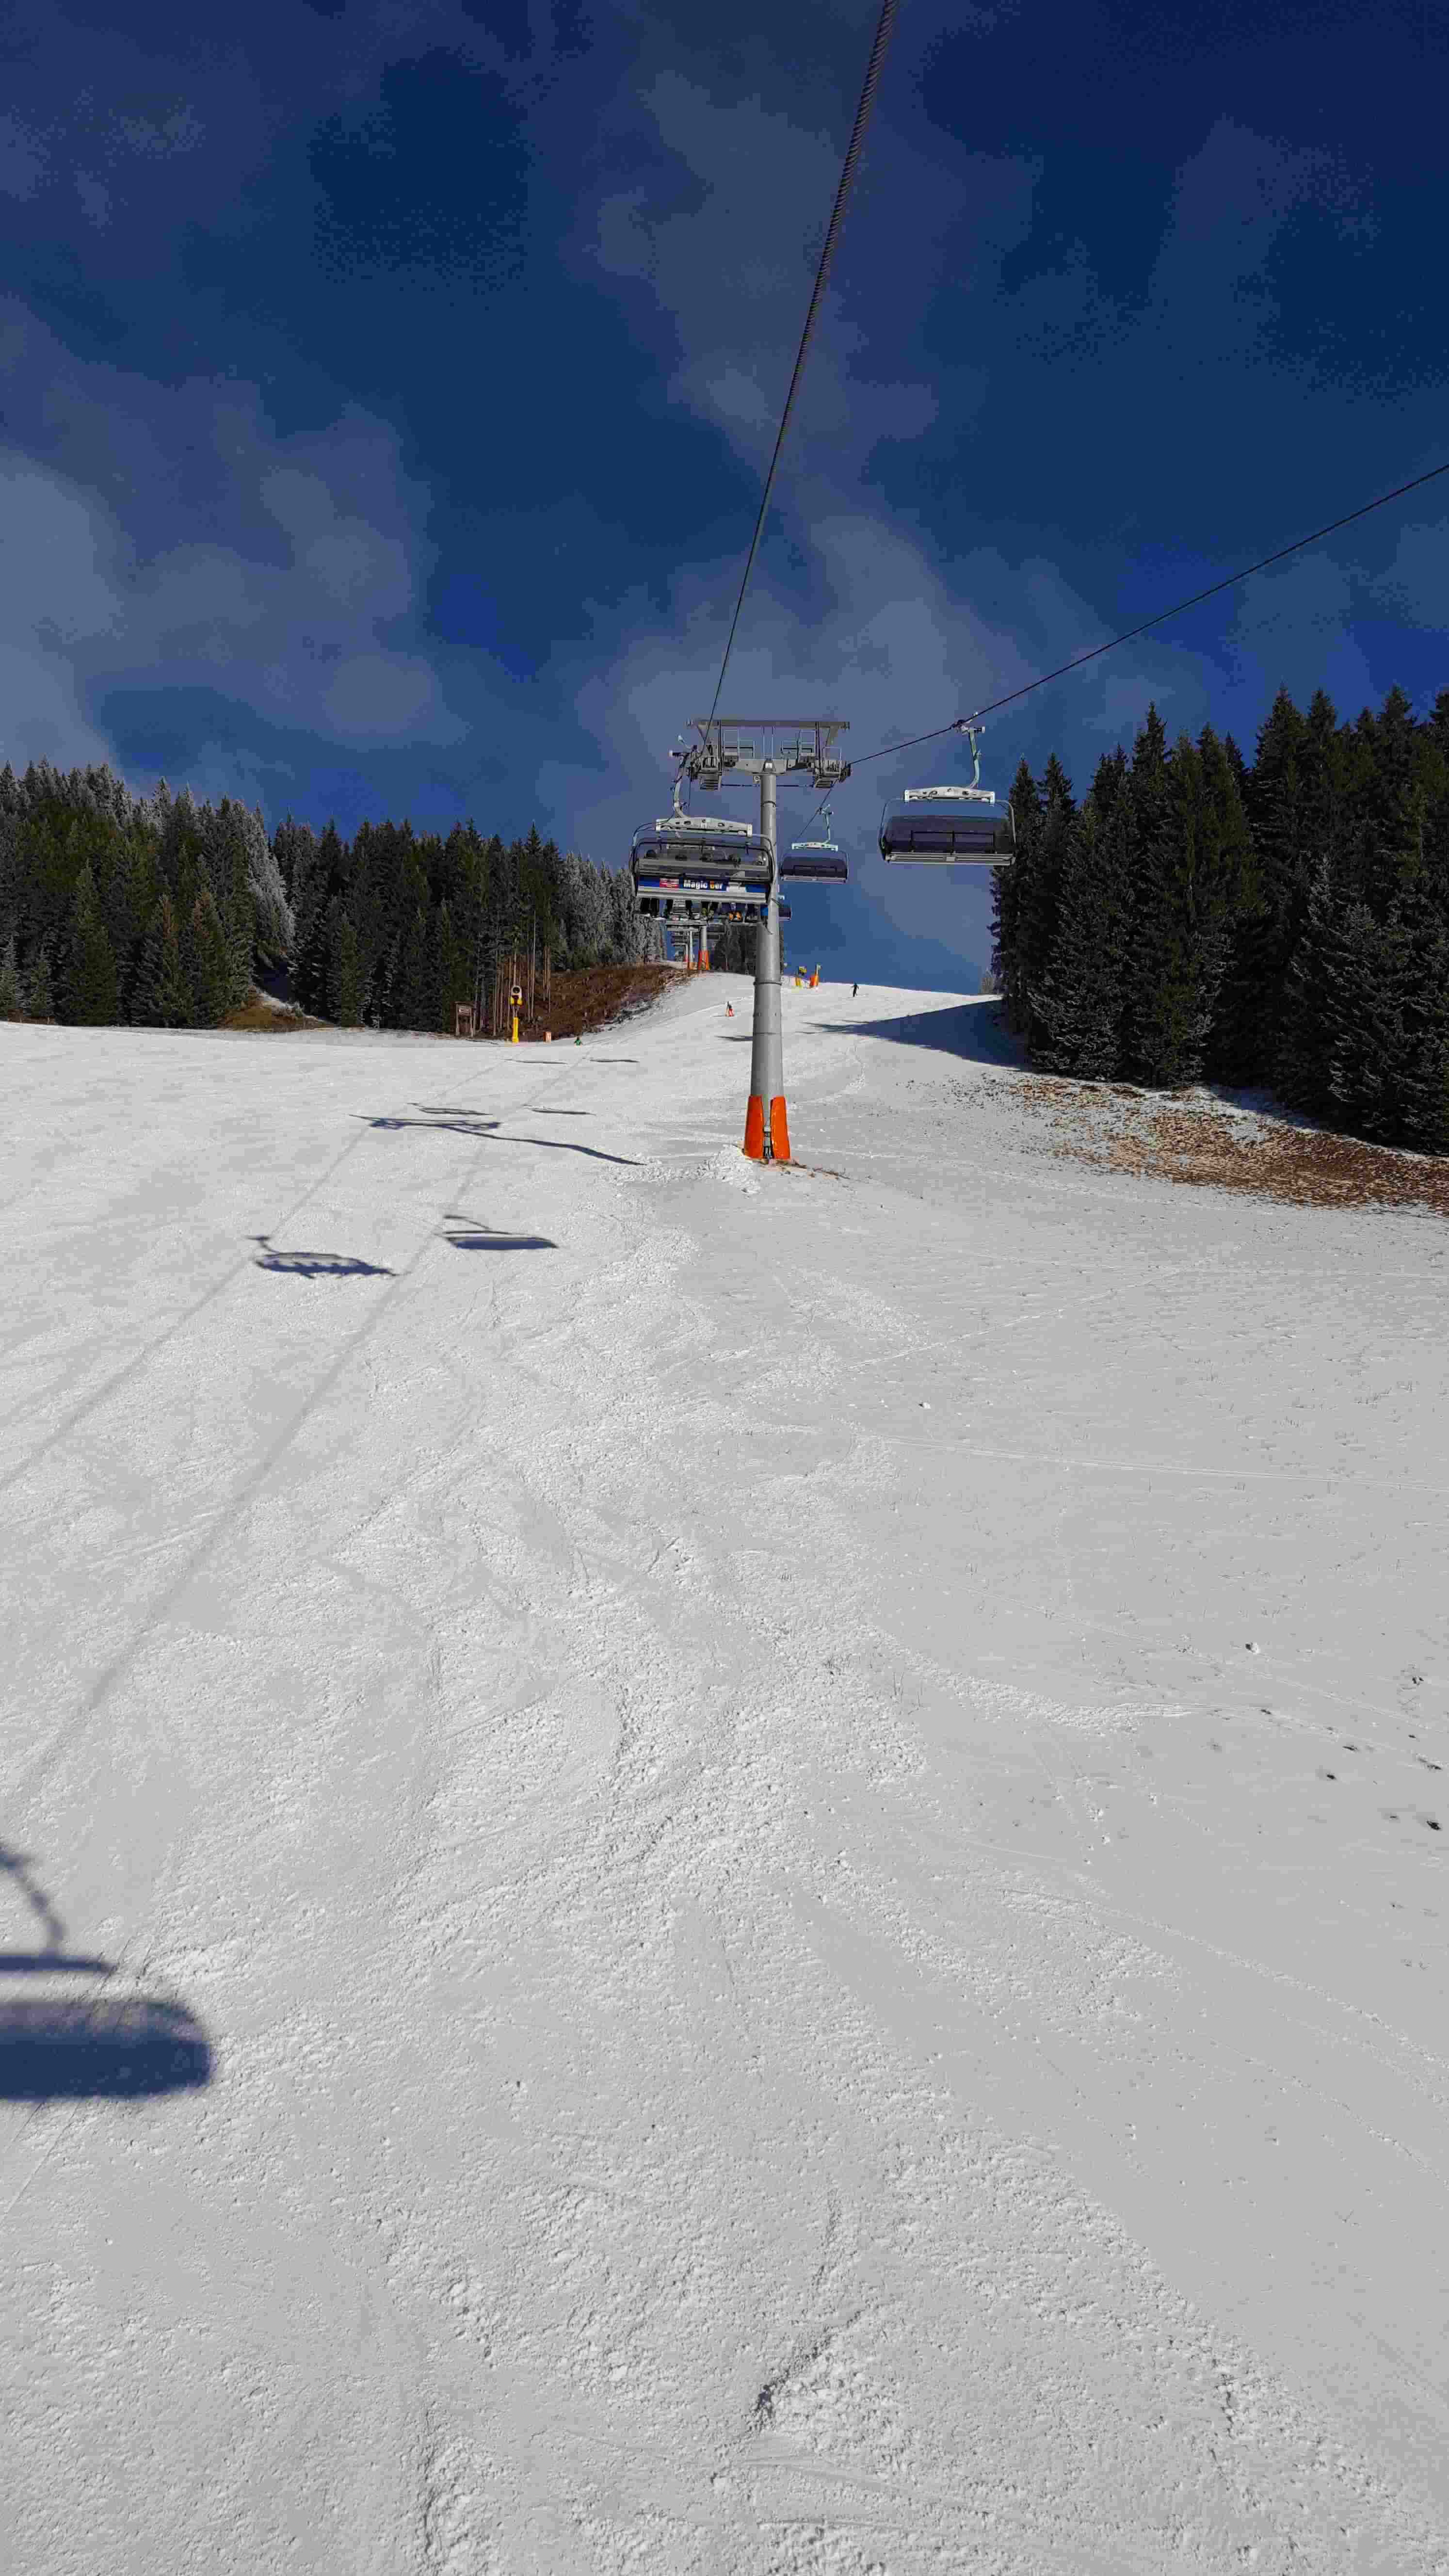 Skisaison 2016/17 in Fieberbrunn/Saalbach ist eröffnet